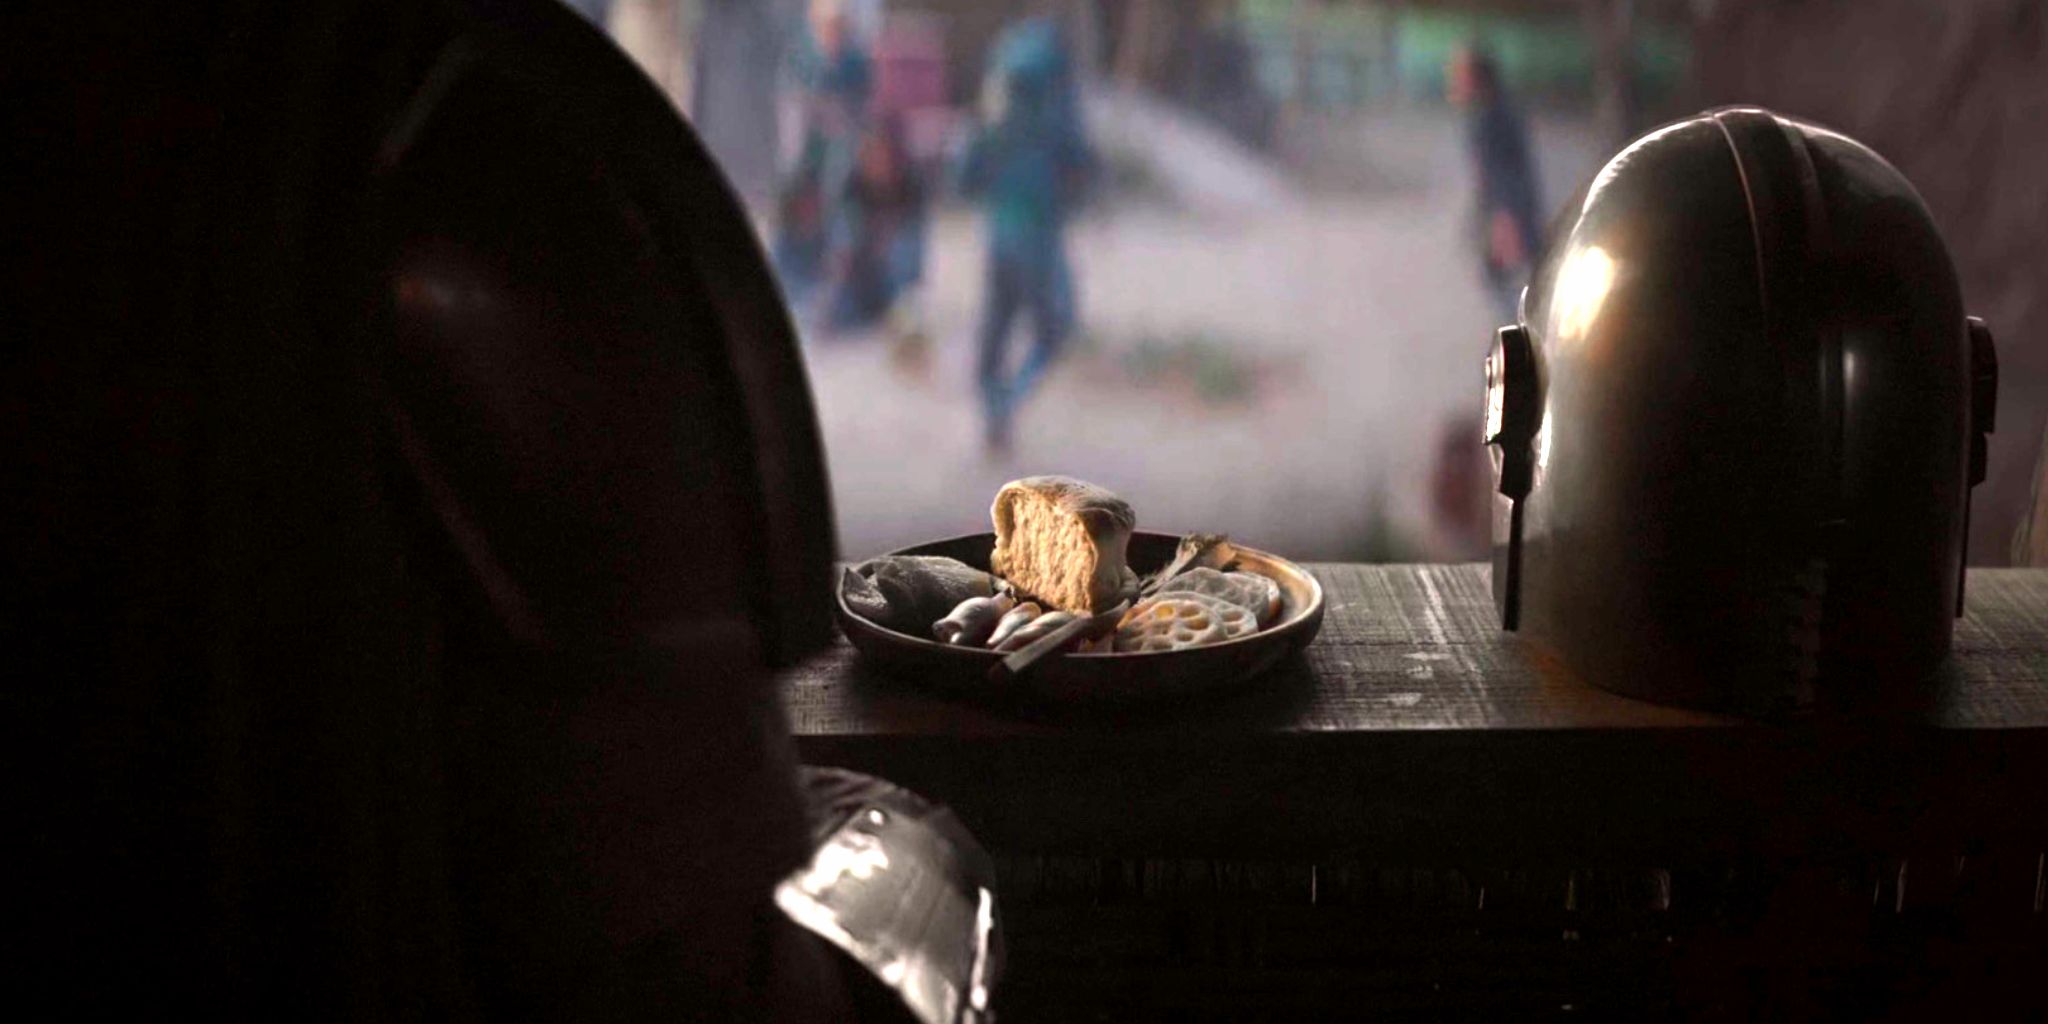 Din Djarin sitzt neben seinem abgenommenen Helm zum Essen in Episode 4 von The Mandalorian